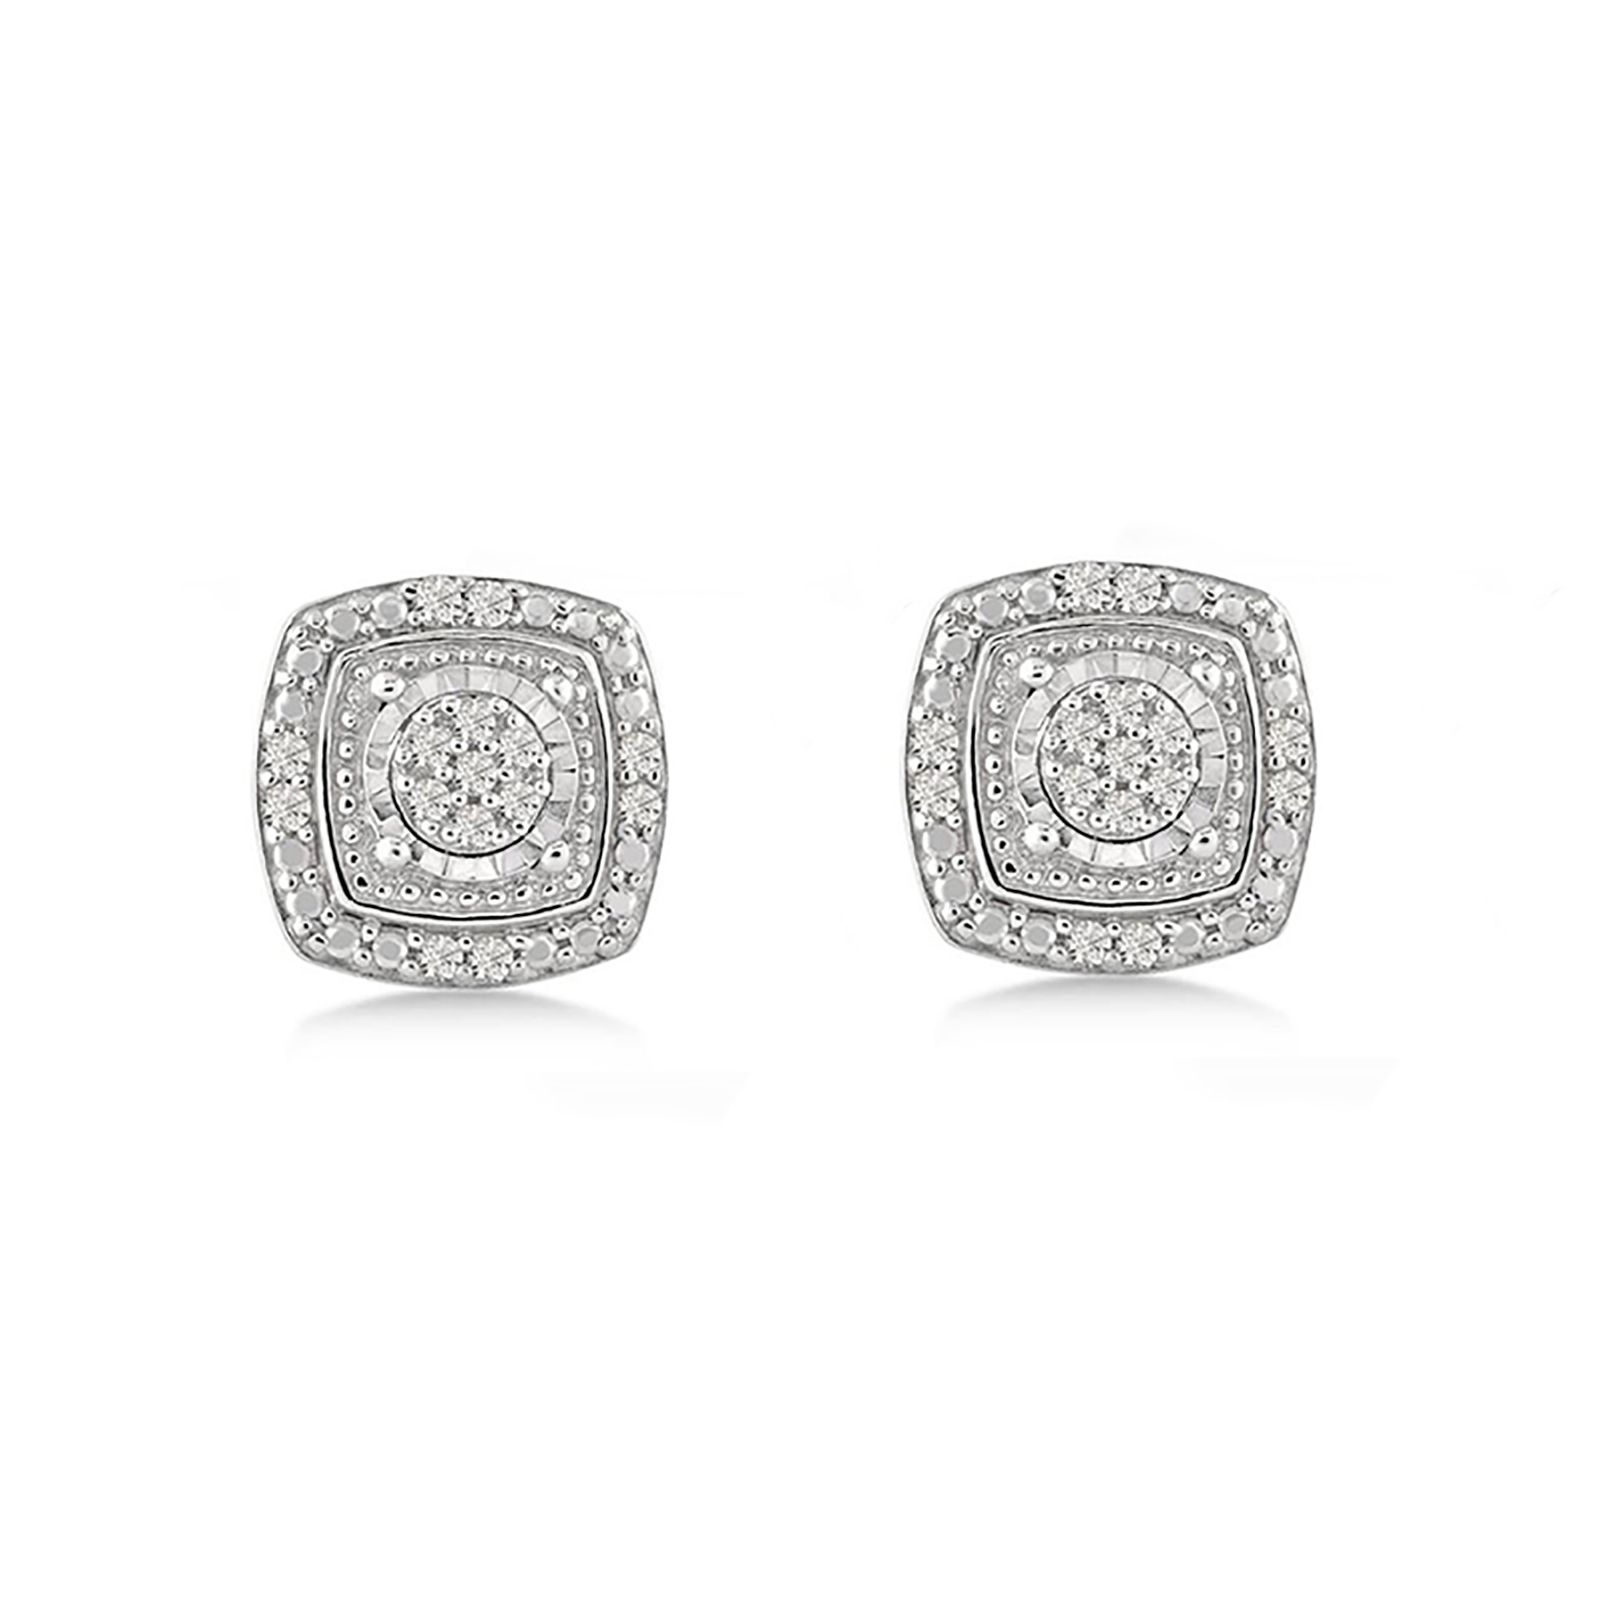 10 Ct T W Diamond Cushion Shaped Stud Earrings In Sterling Silver Bjs Wholesale Club